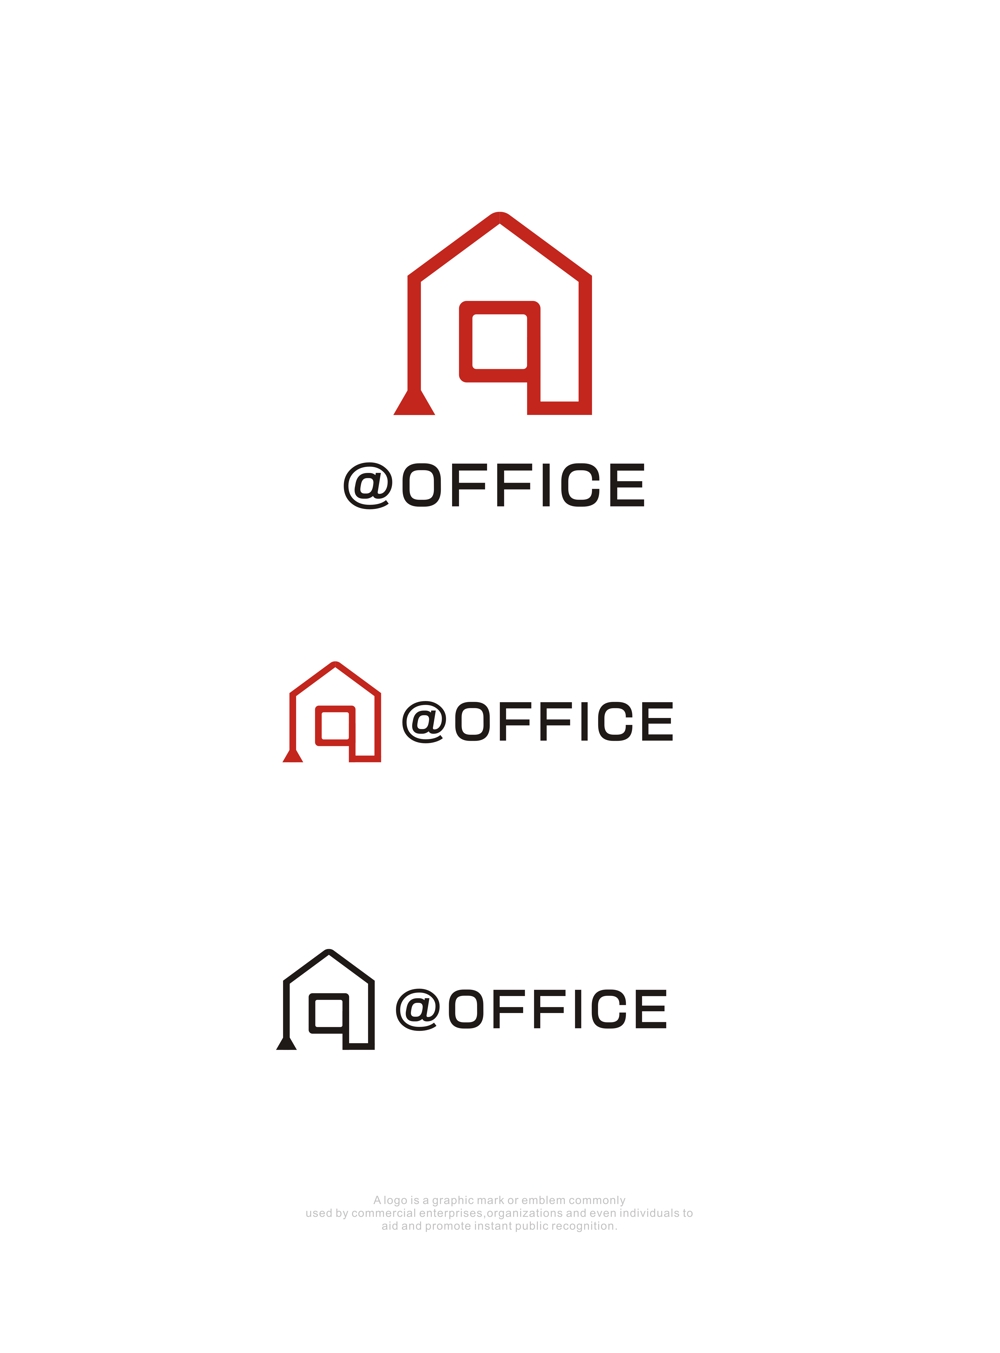 レンタル（バーチャル）オフィス、@OFFICE (アットオフィス)のロゴ